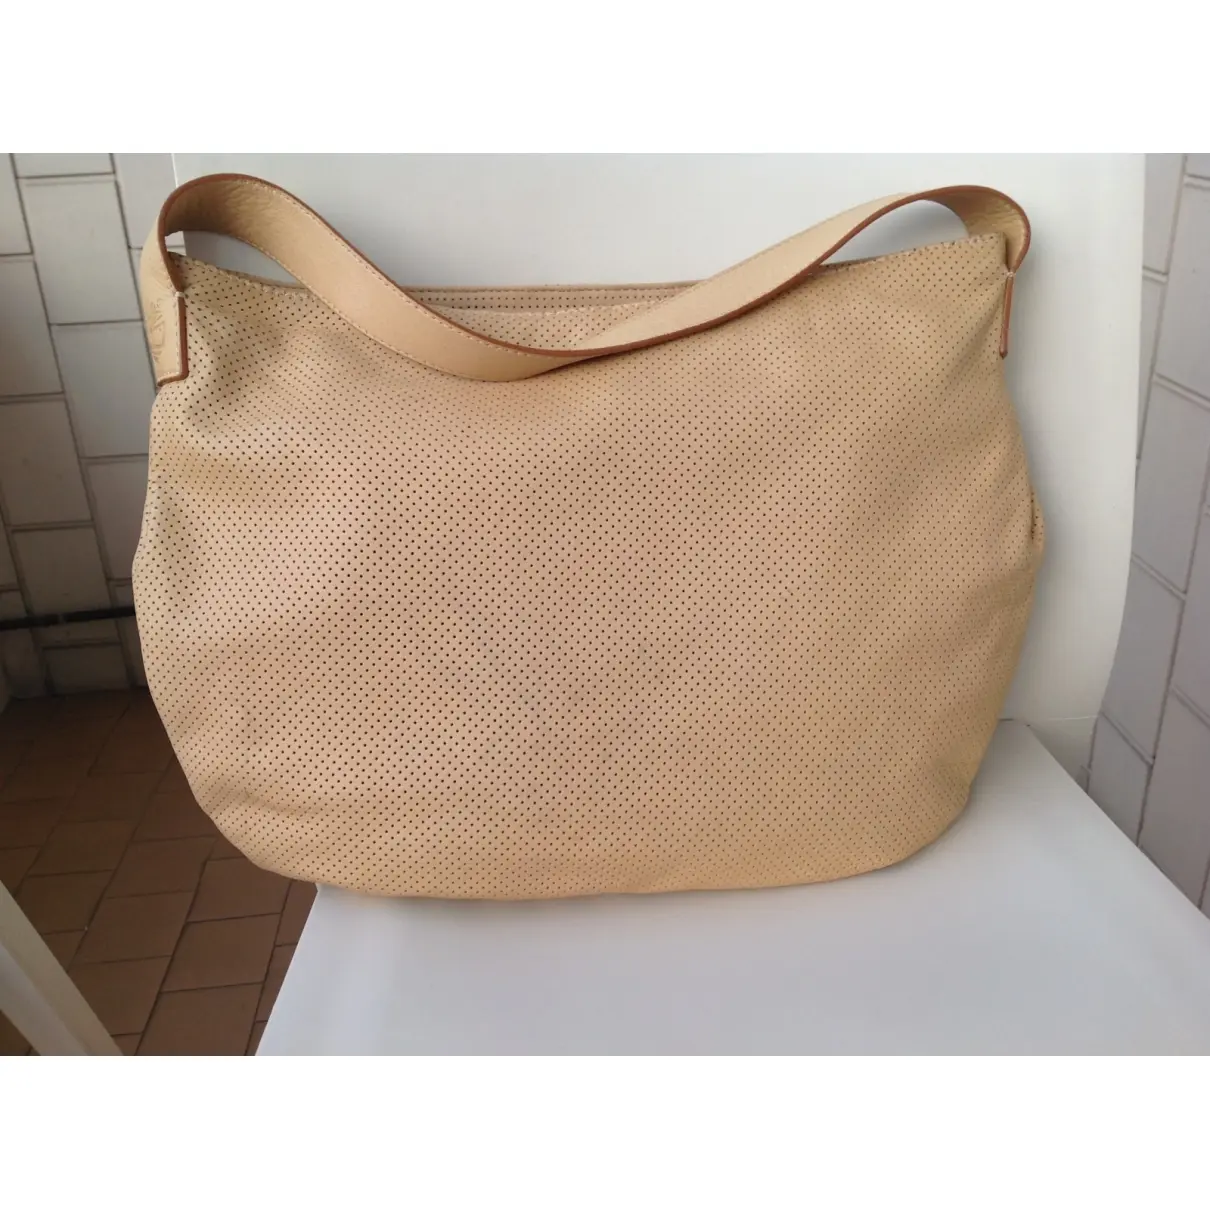 Timberland Leather handbag for sale